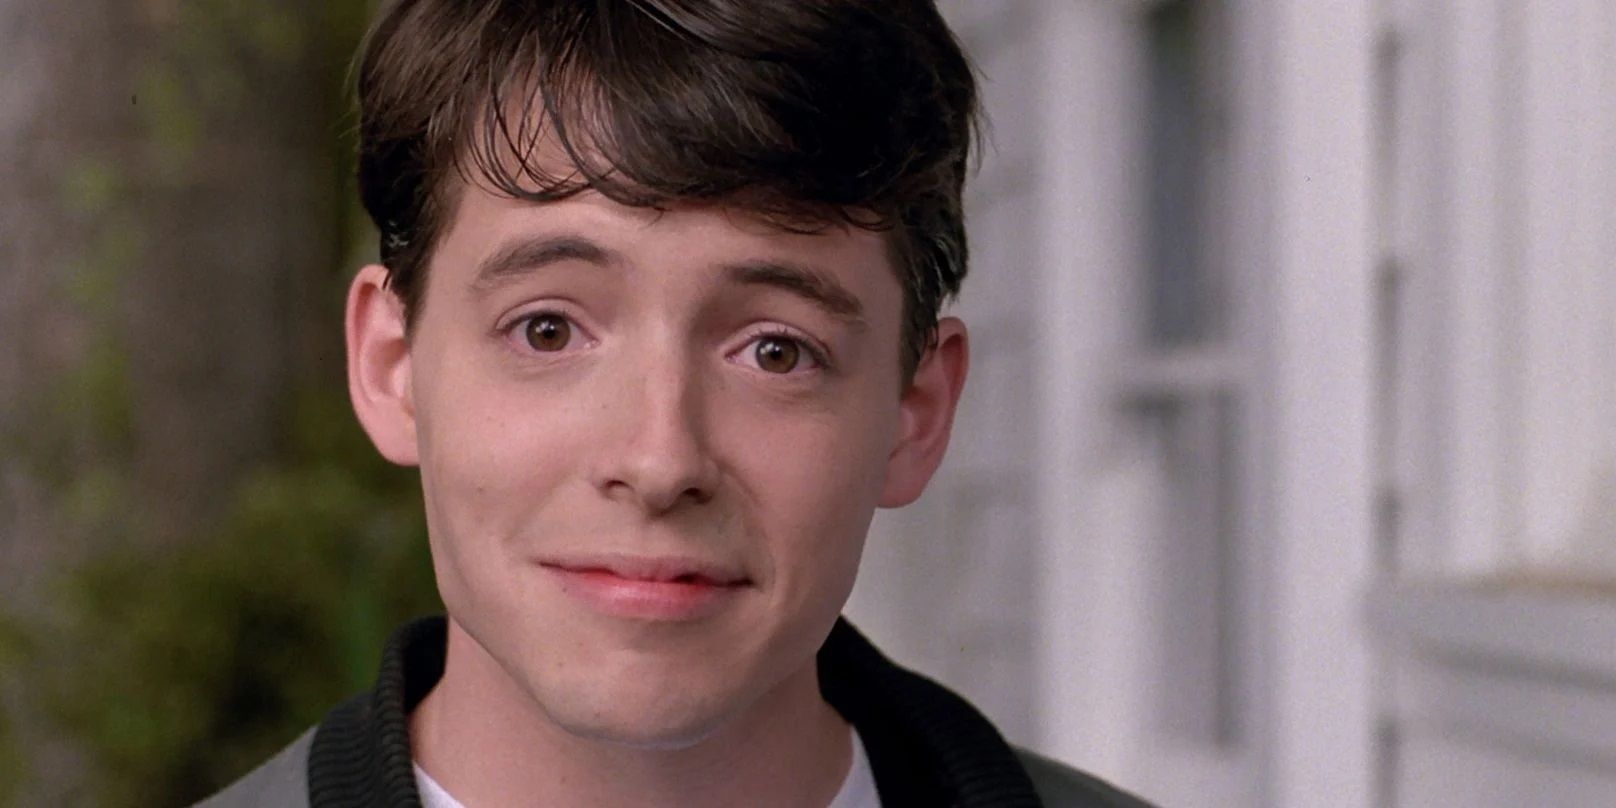 Ferris breaks the fourth wall in Ferris Bueller's Day Off